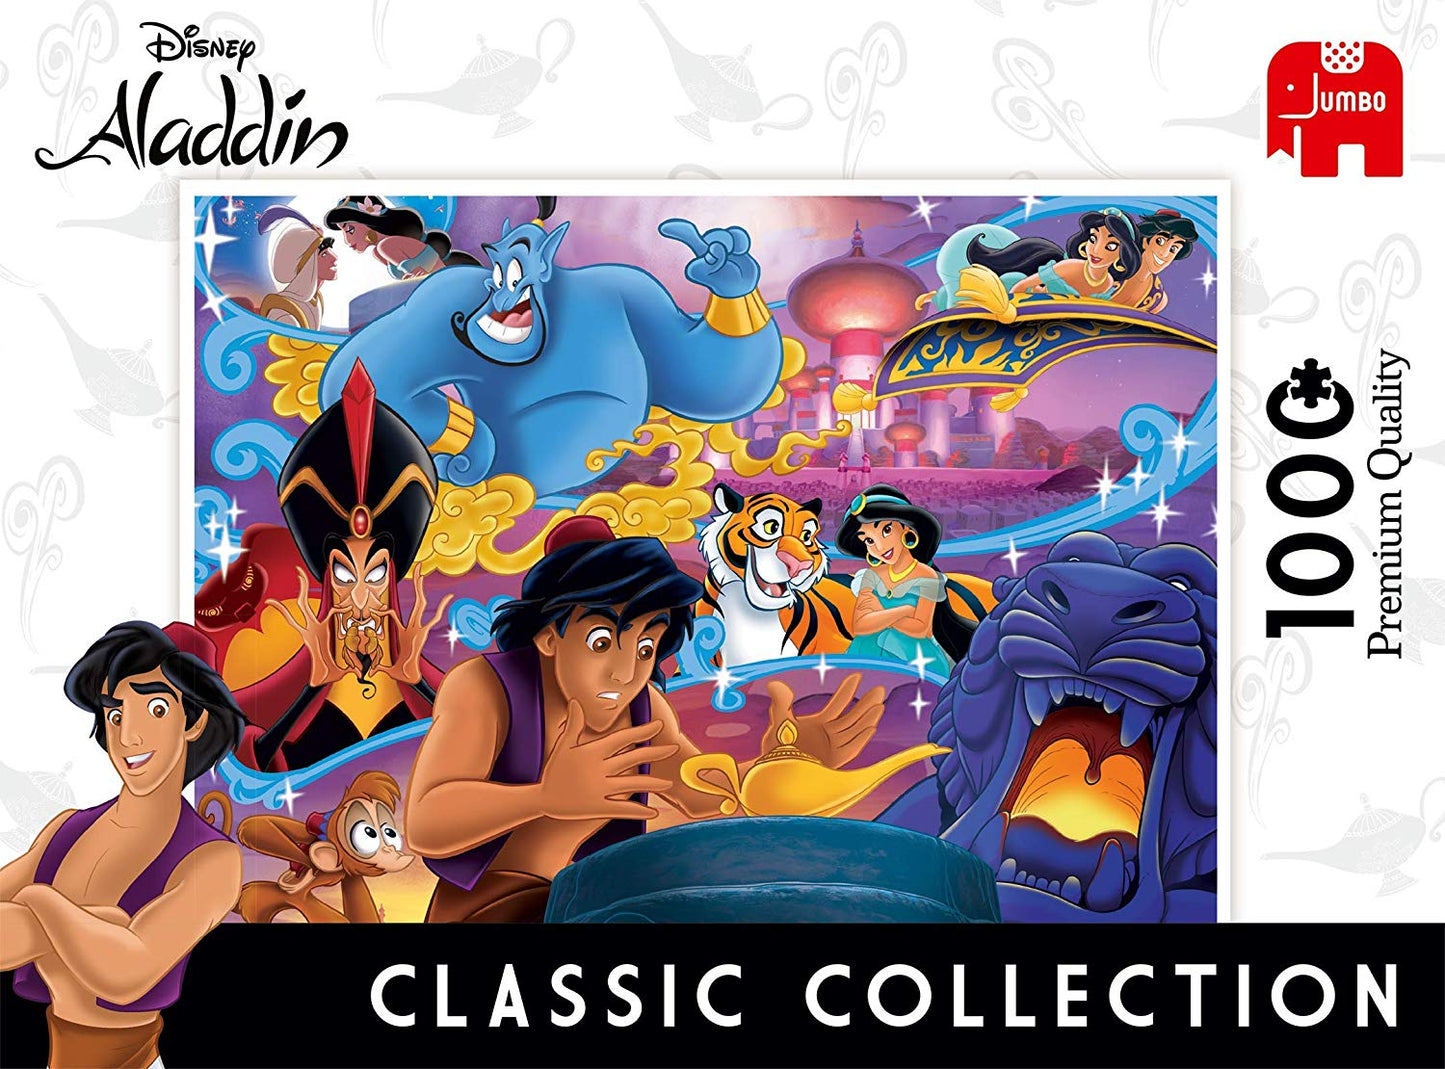 Aladdin af Disney, 1000 brikker puslespil